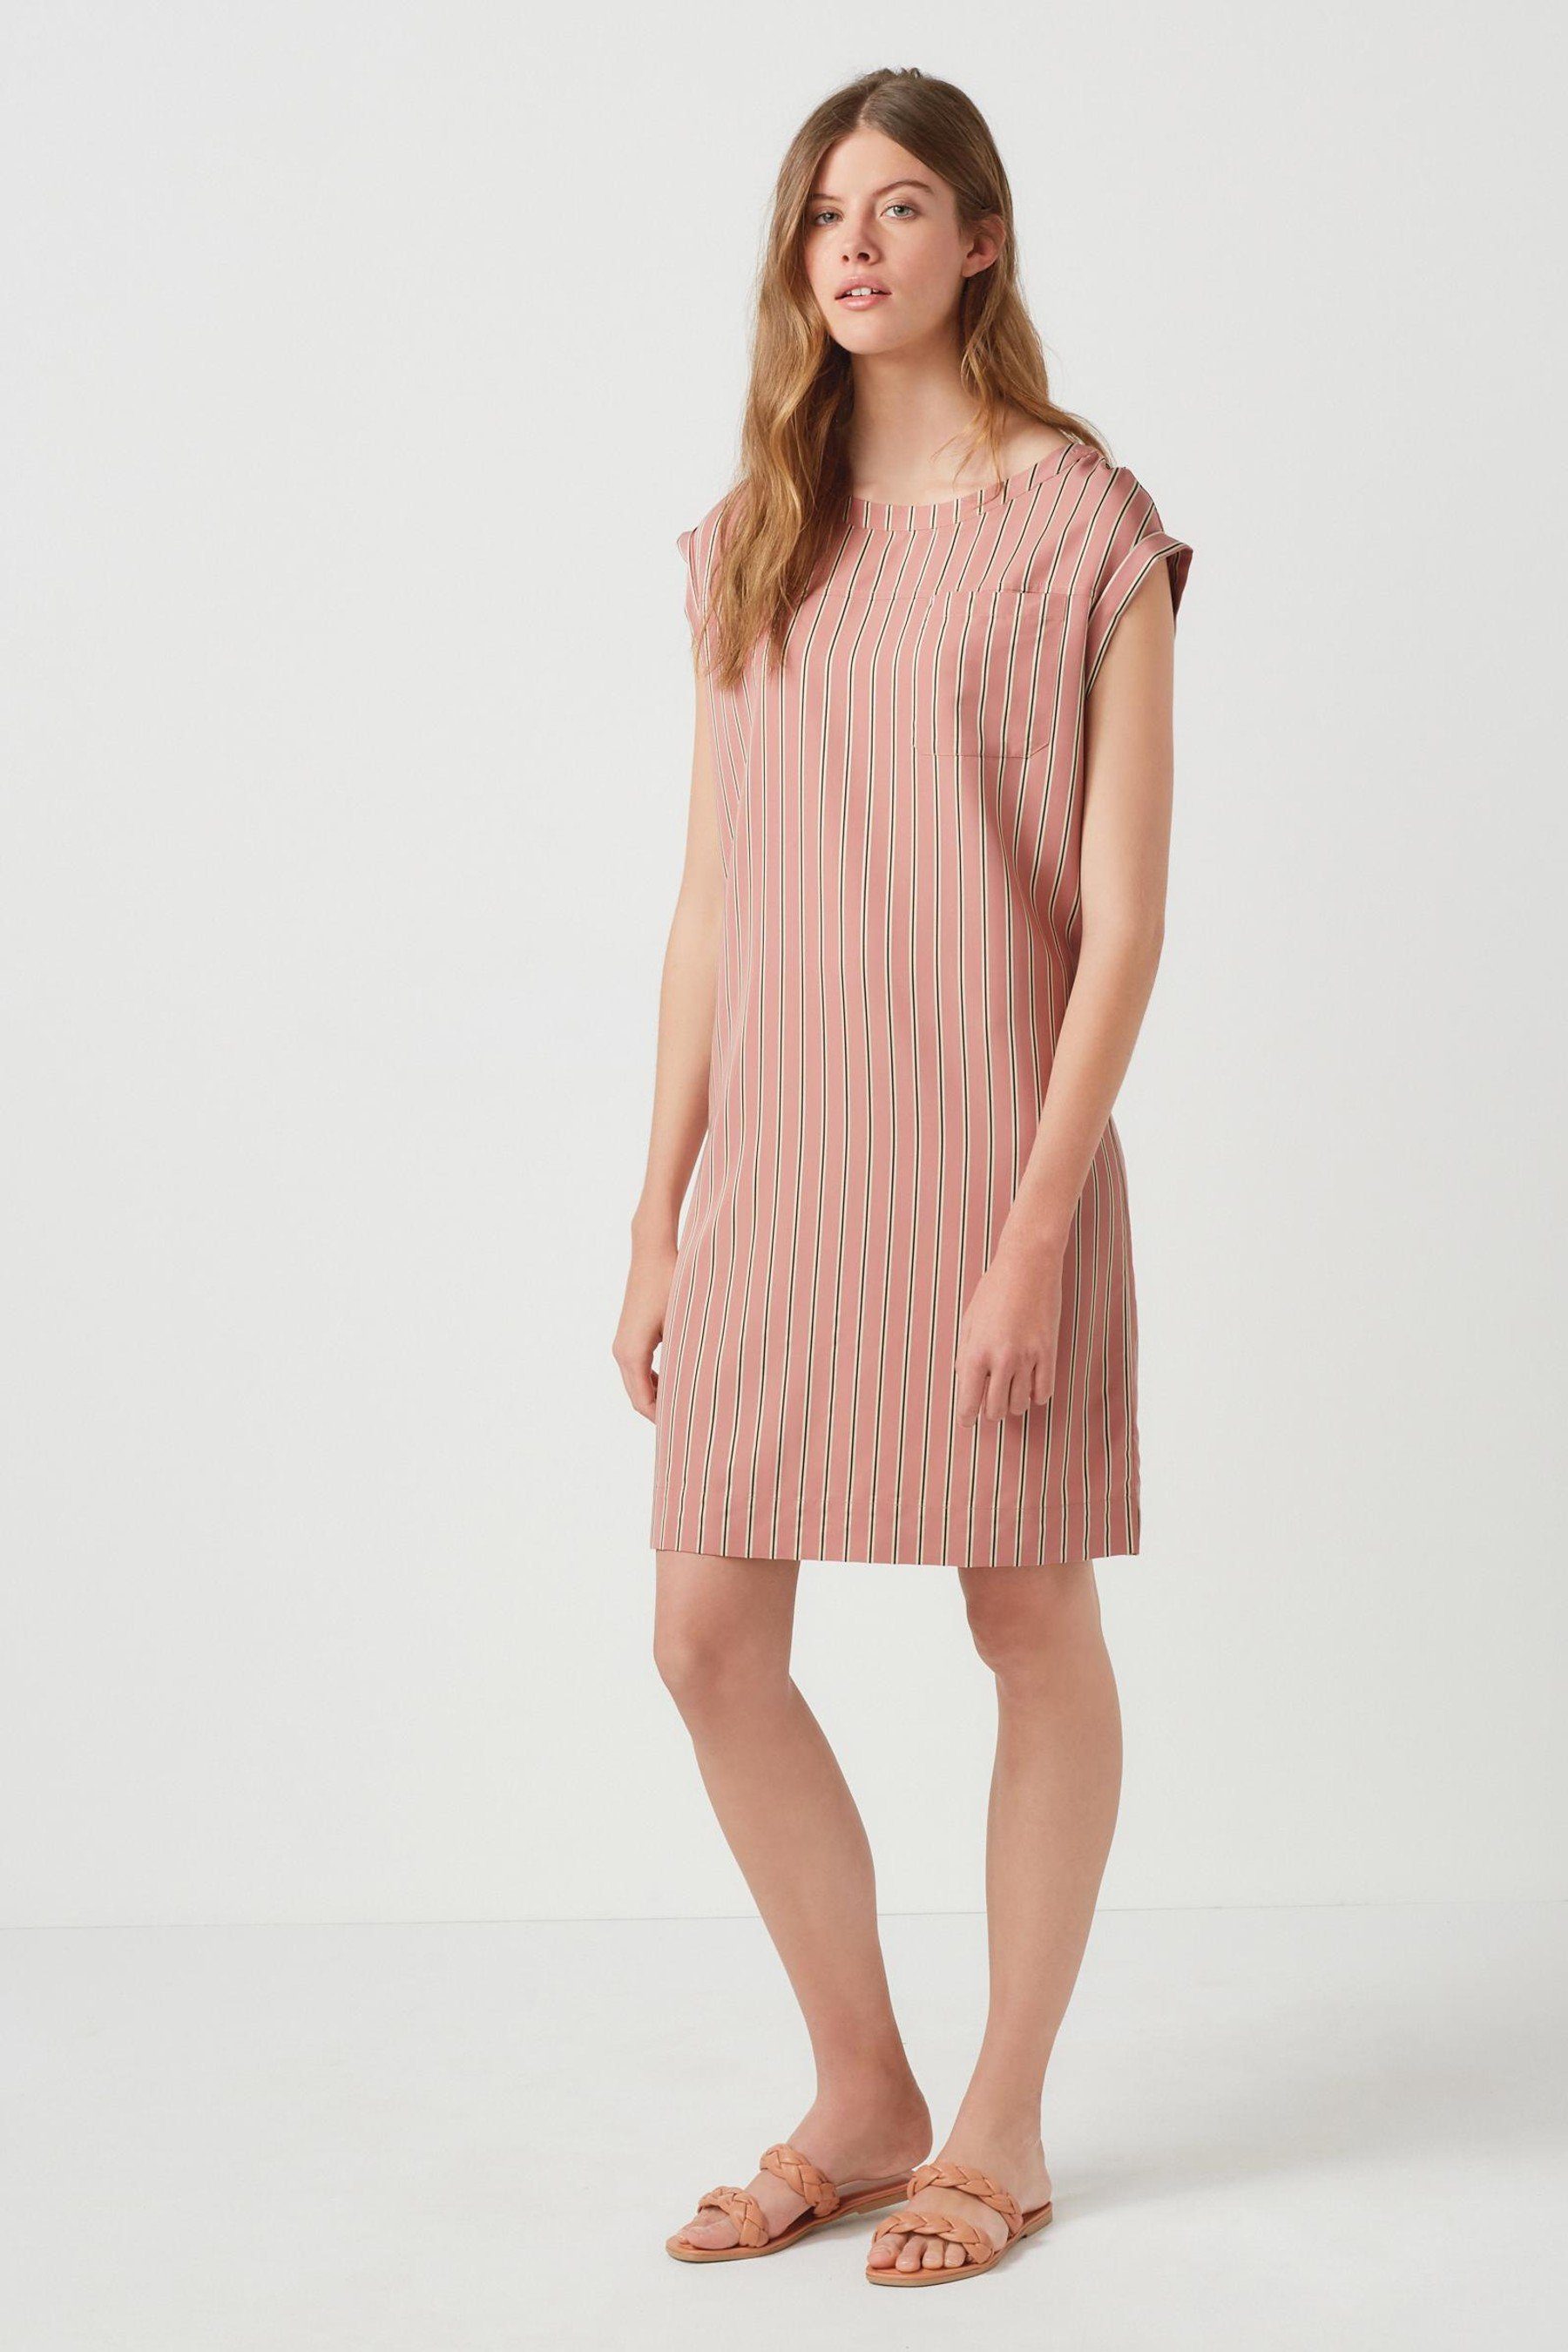 Next Etuikleid »Weites Kleid« (1-tlg) kaufen | OTTO